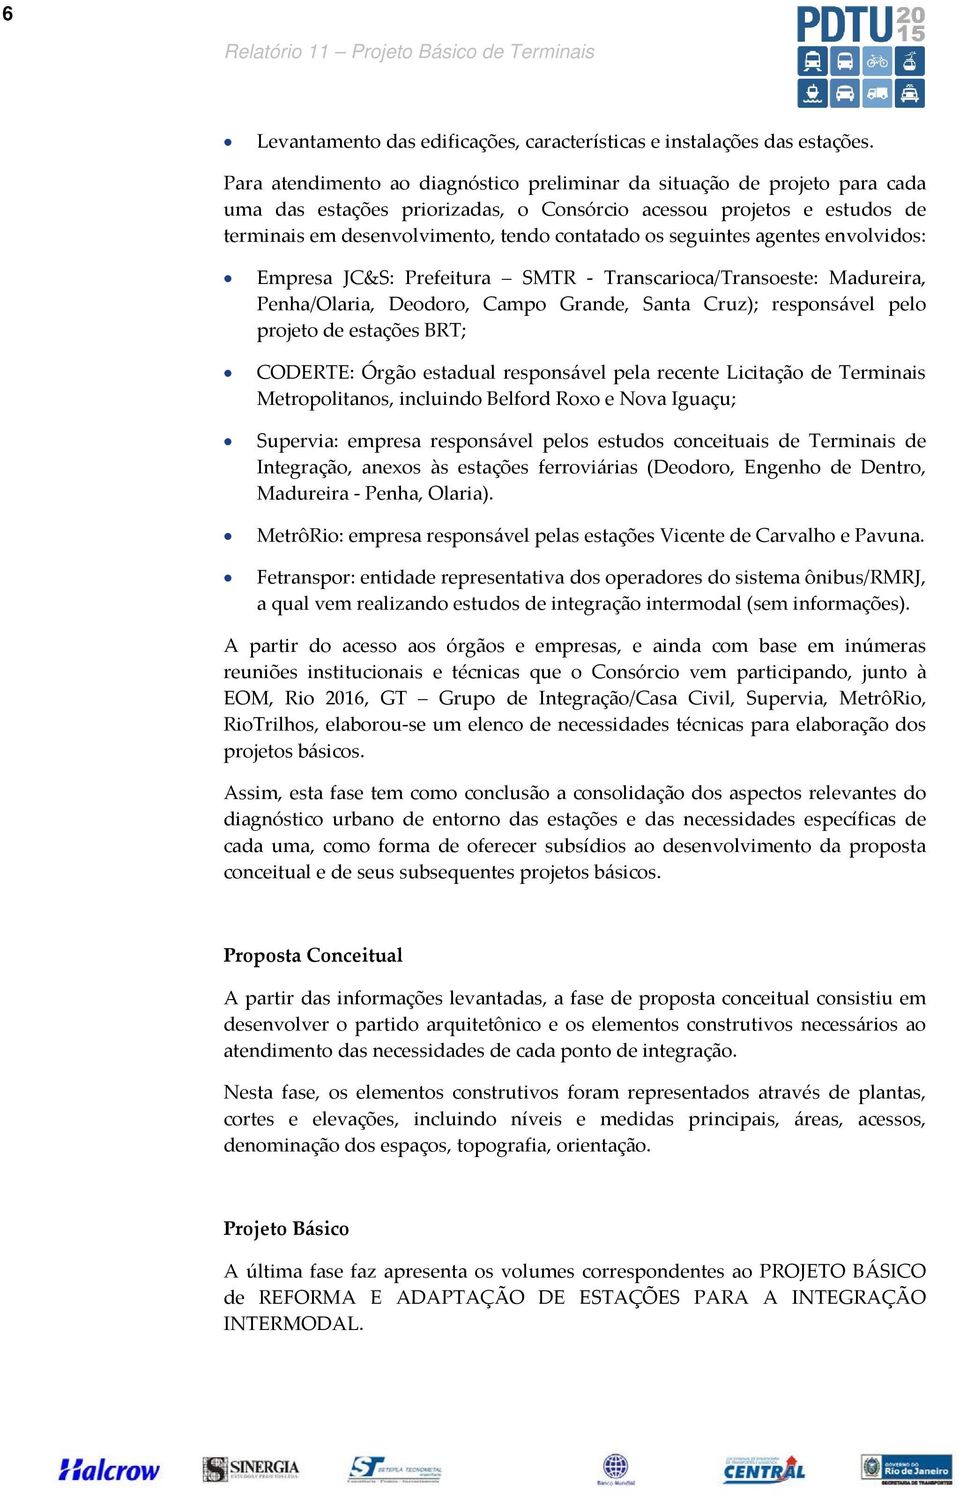 seguintes agentes envolvidos: Empresa JC&S: Prefeitura SMTR - Transcarioca/Transoeste: Madureira, Penha/Olaria, Deodoro, Campo Grande, Santa Cruz); responsável pelo projeto de estações BRT; CODERTE: